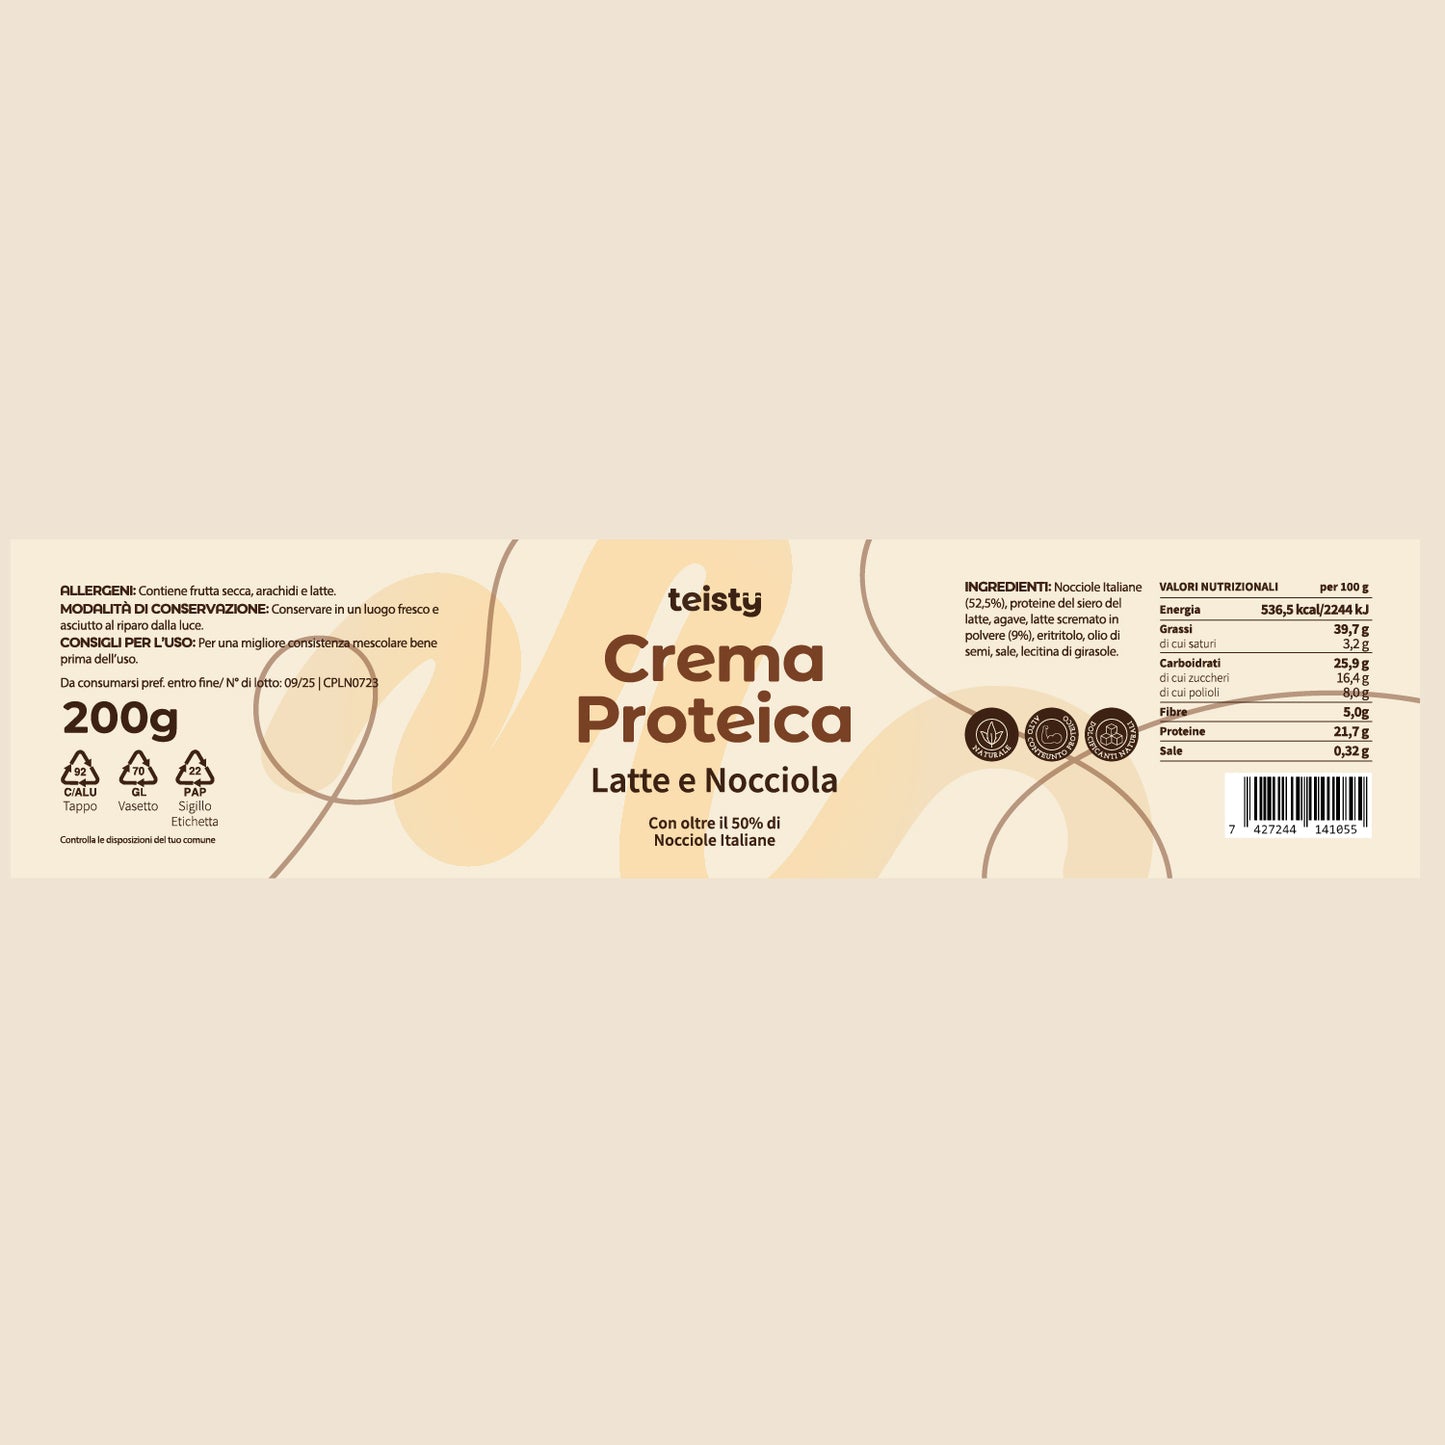 Crema Proteica - Latte e Nocciola - la nuova Wafer e Nocciola